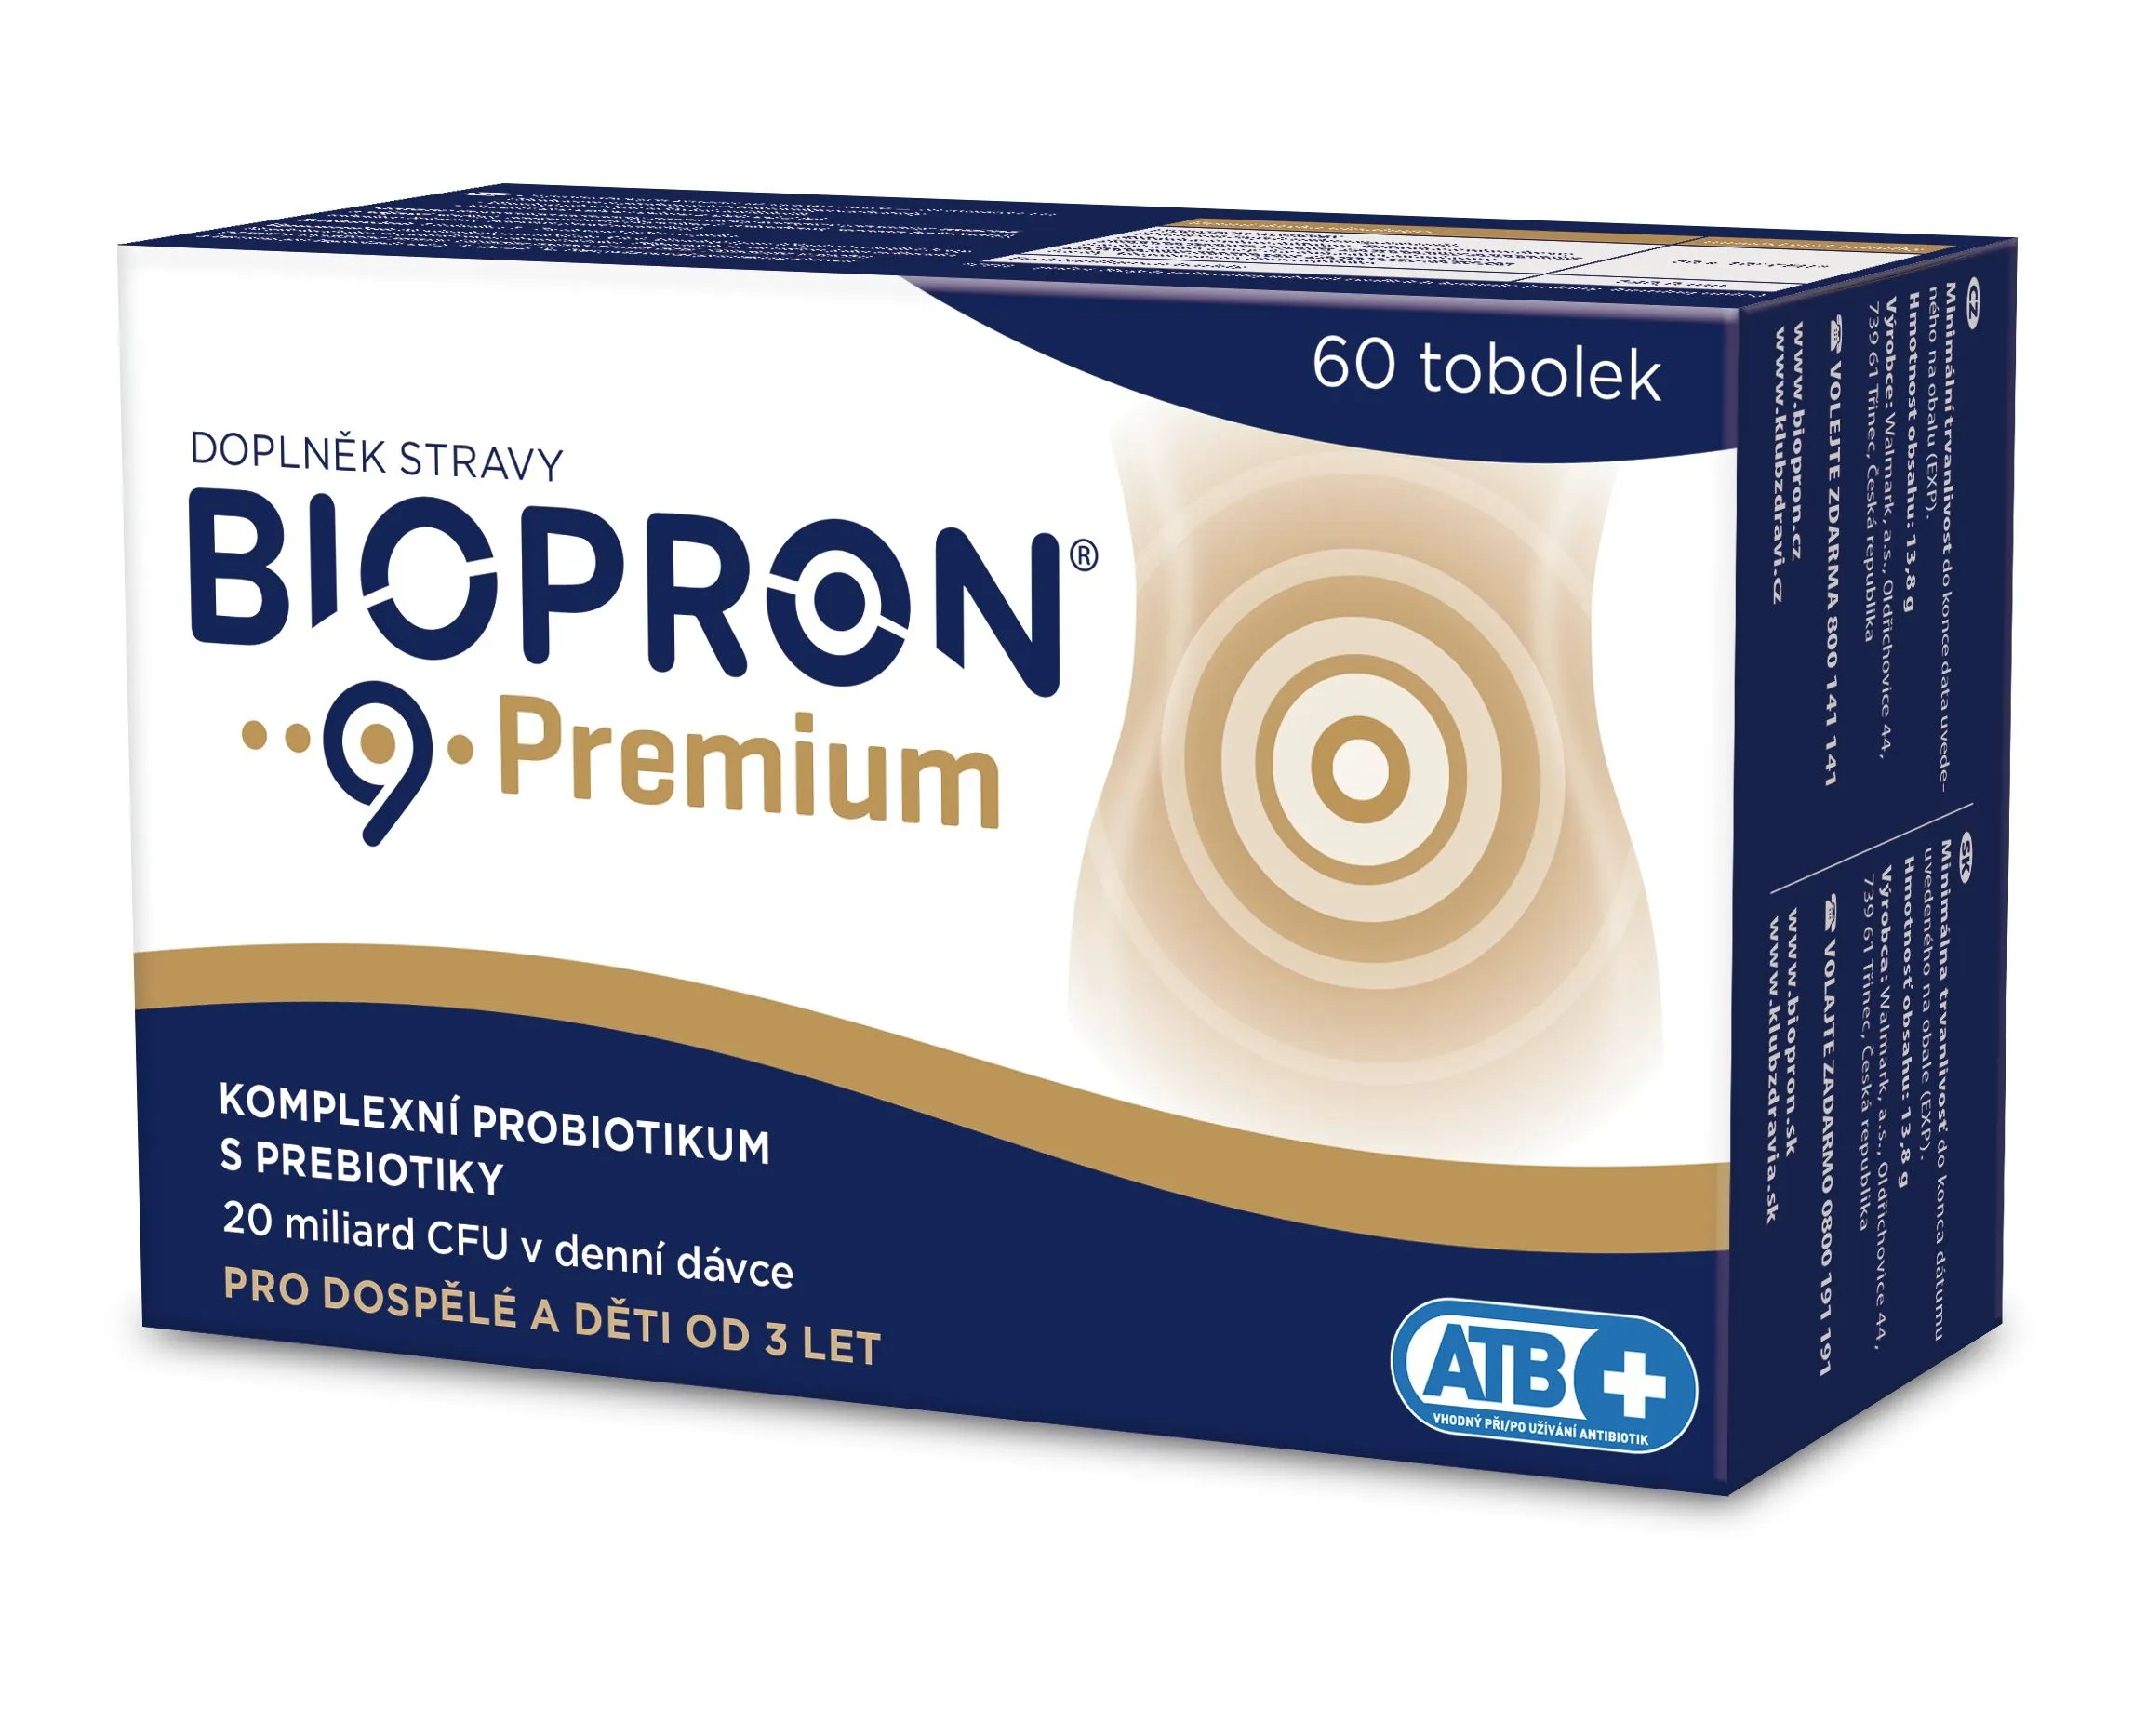 Biopron 9 Premium